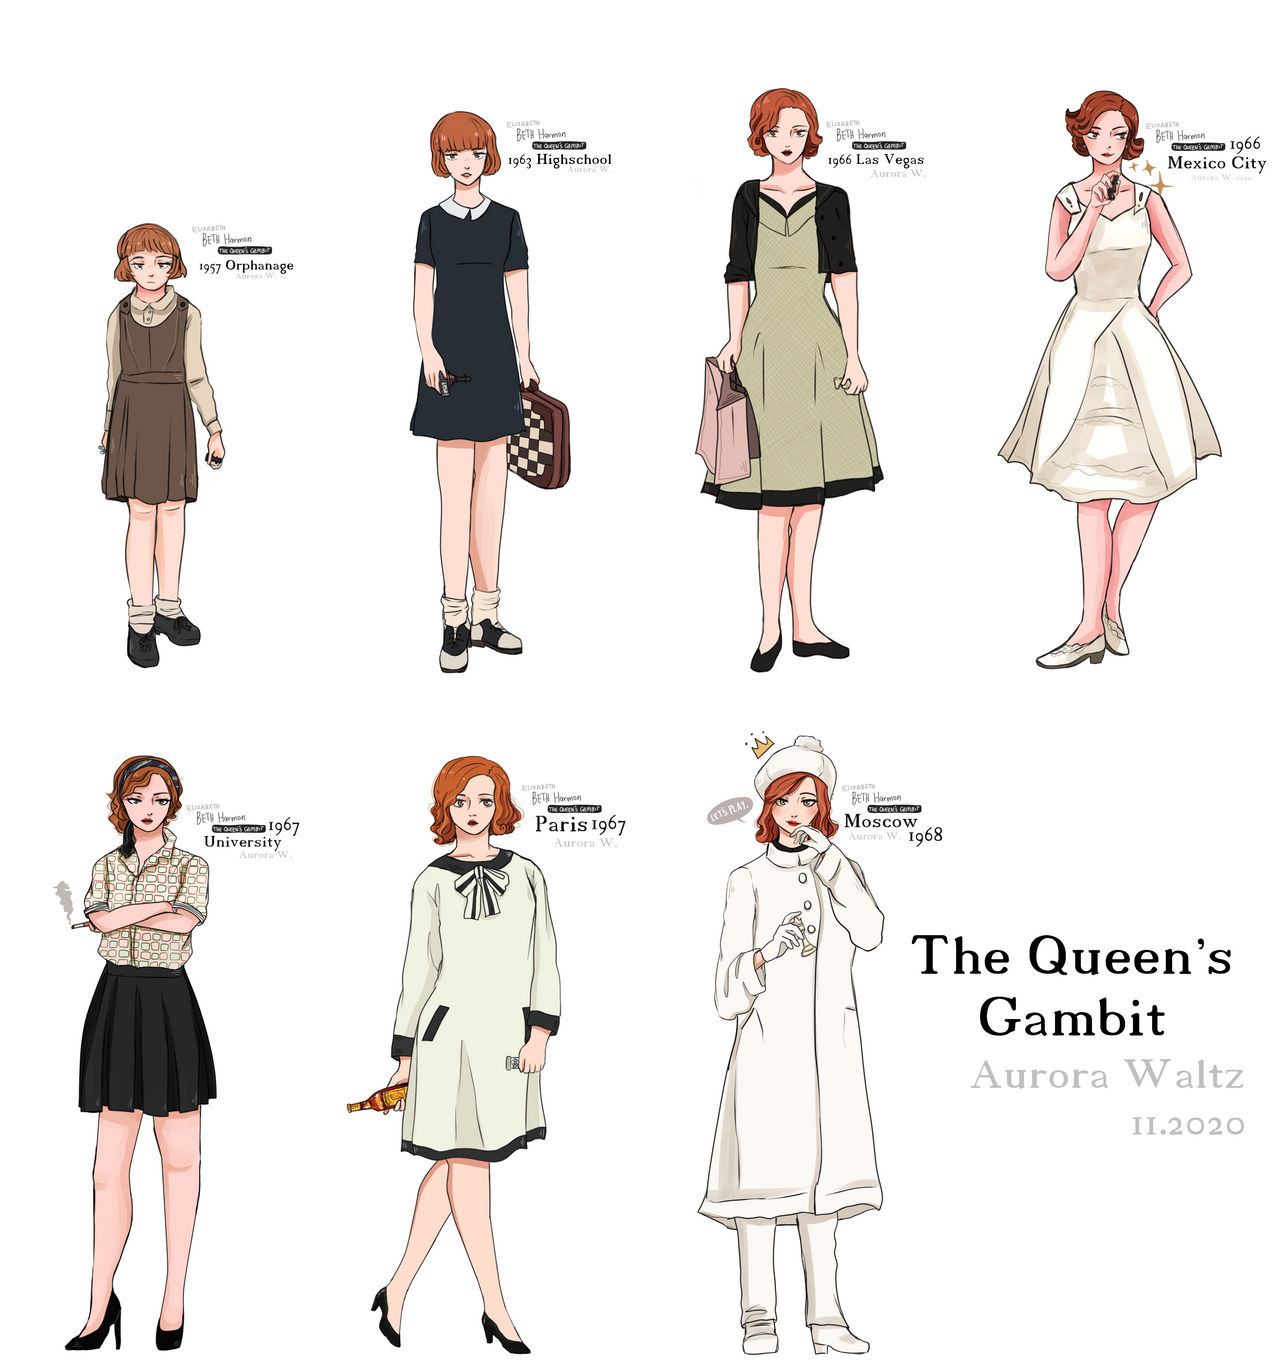 Queen's Gambit Elizabeth Harmon by jo-ar on DeviantArt